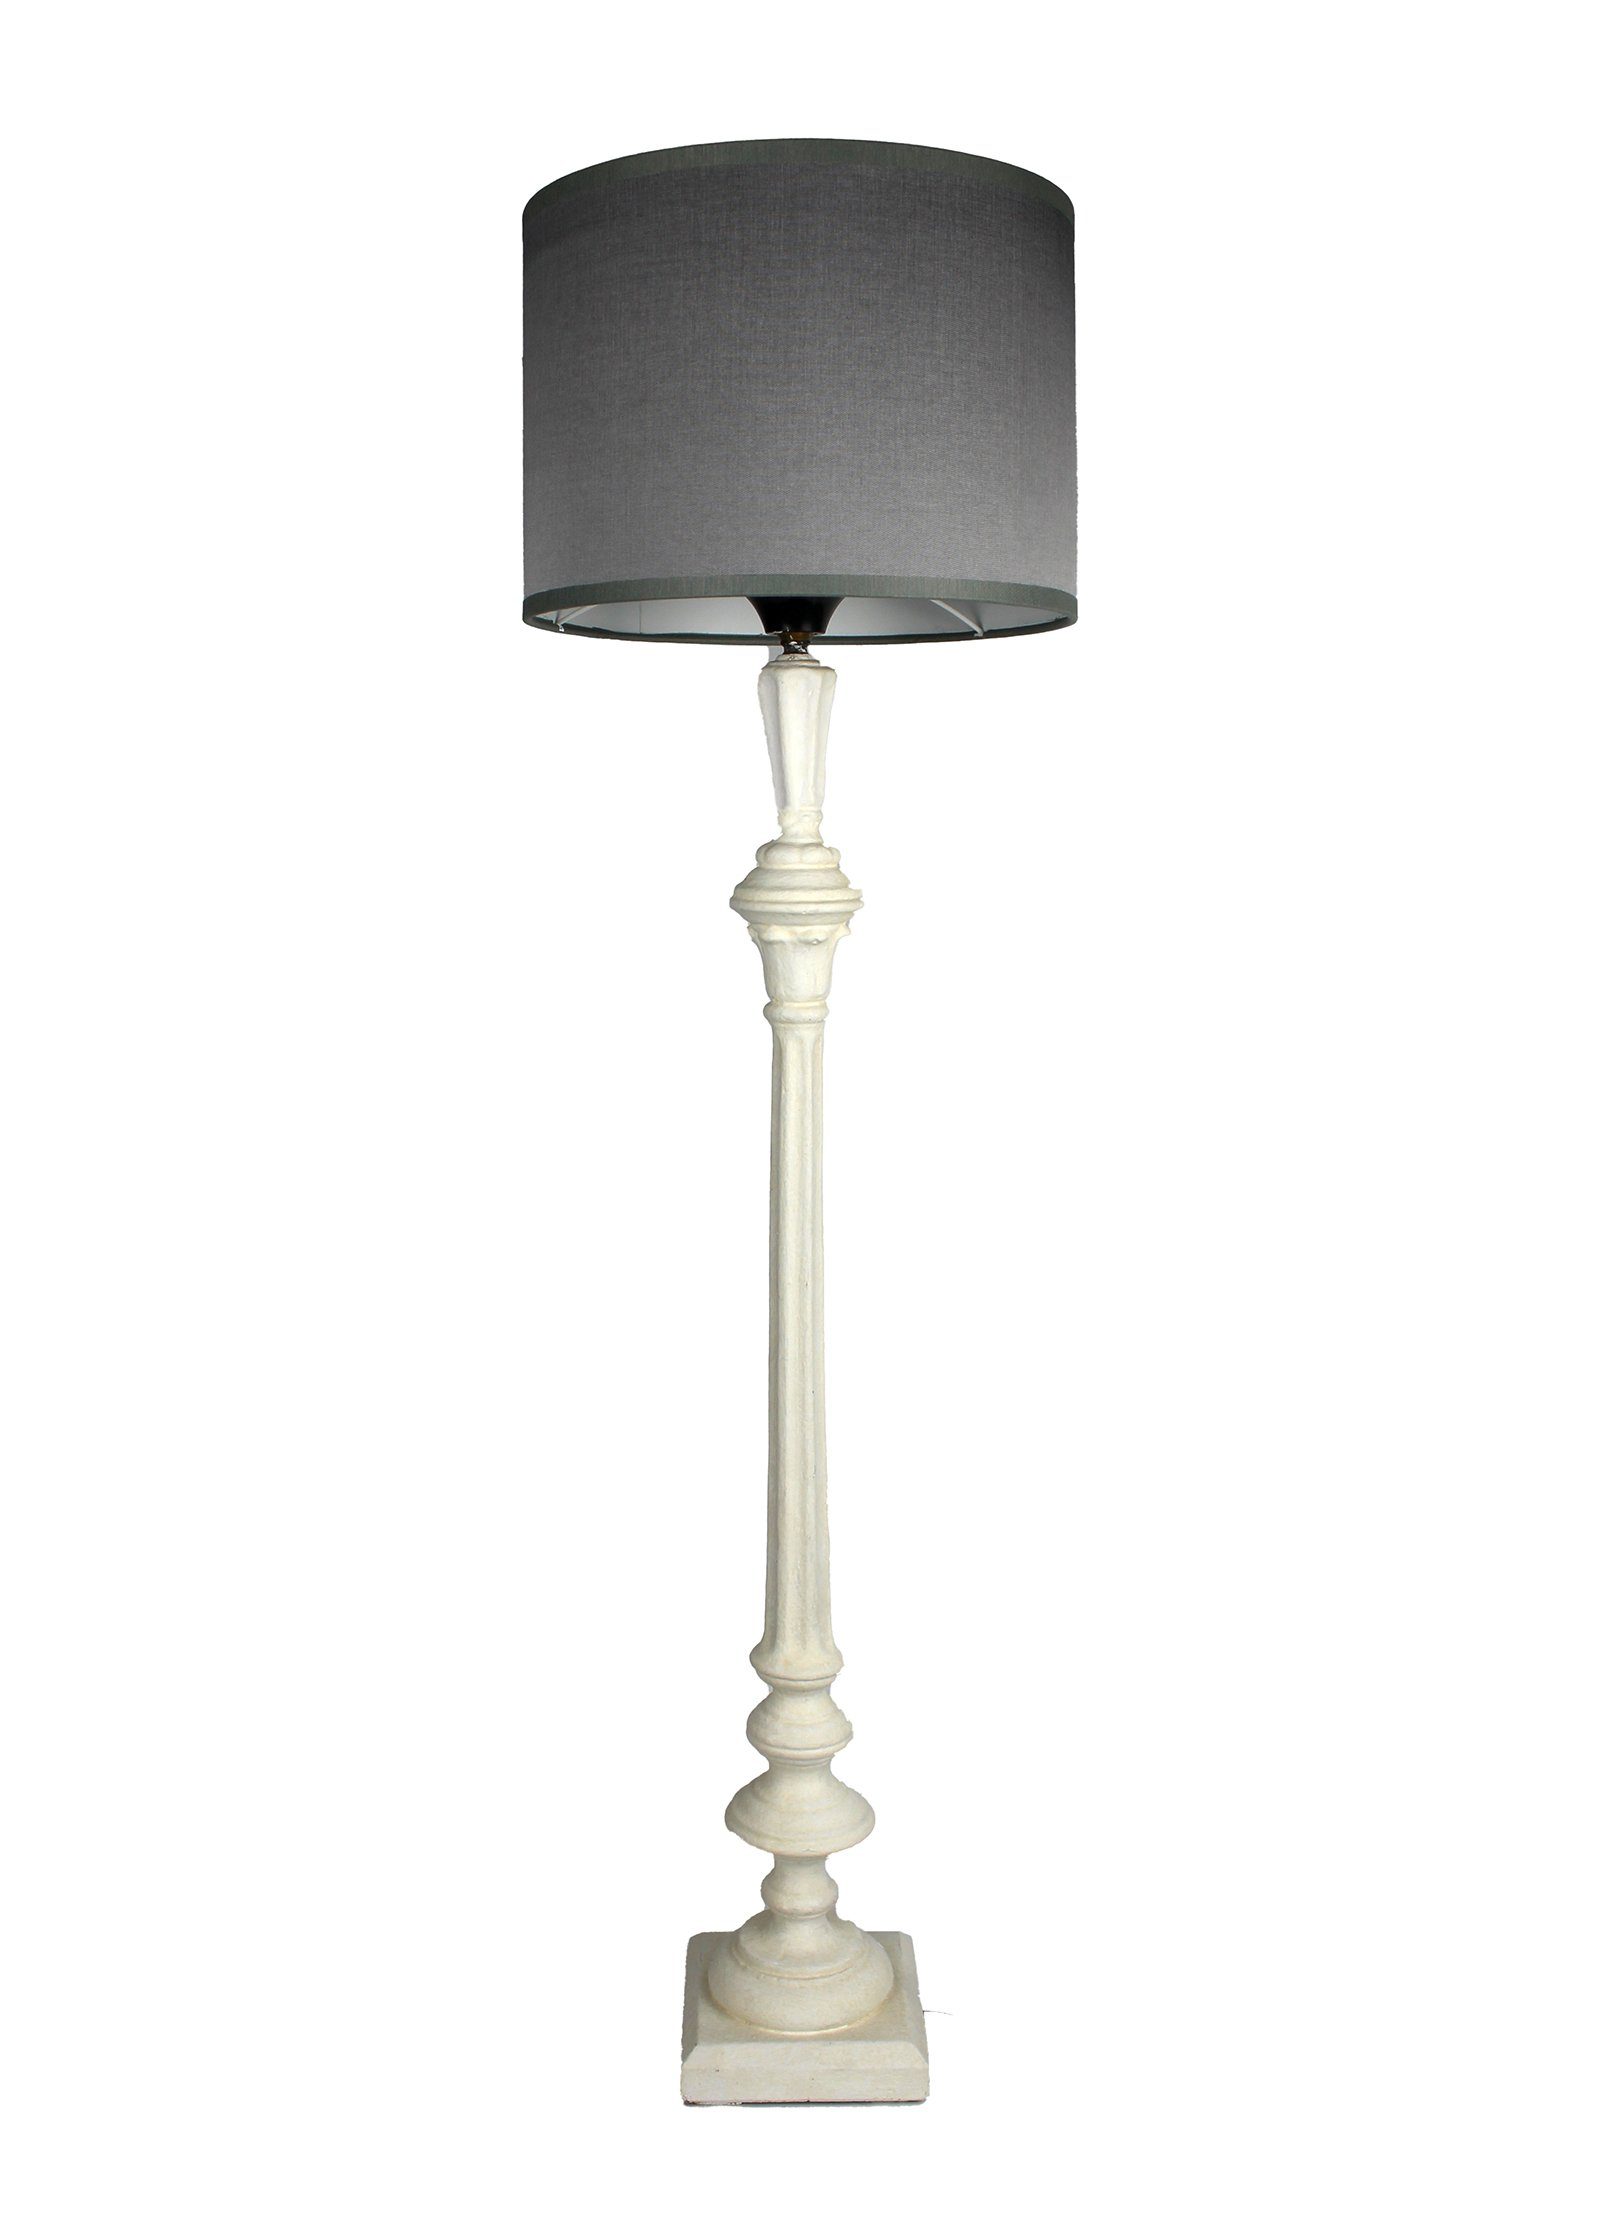 Signature Home weiß Holz ohne in Italien warmweiß, schmal Tischlampe grau handgefertigt lackiert Lampenschirm, mit Tischleuchte Leuchtmittel, Collection gedrechselt 